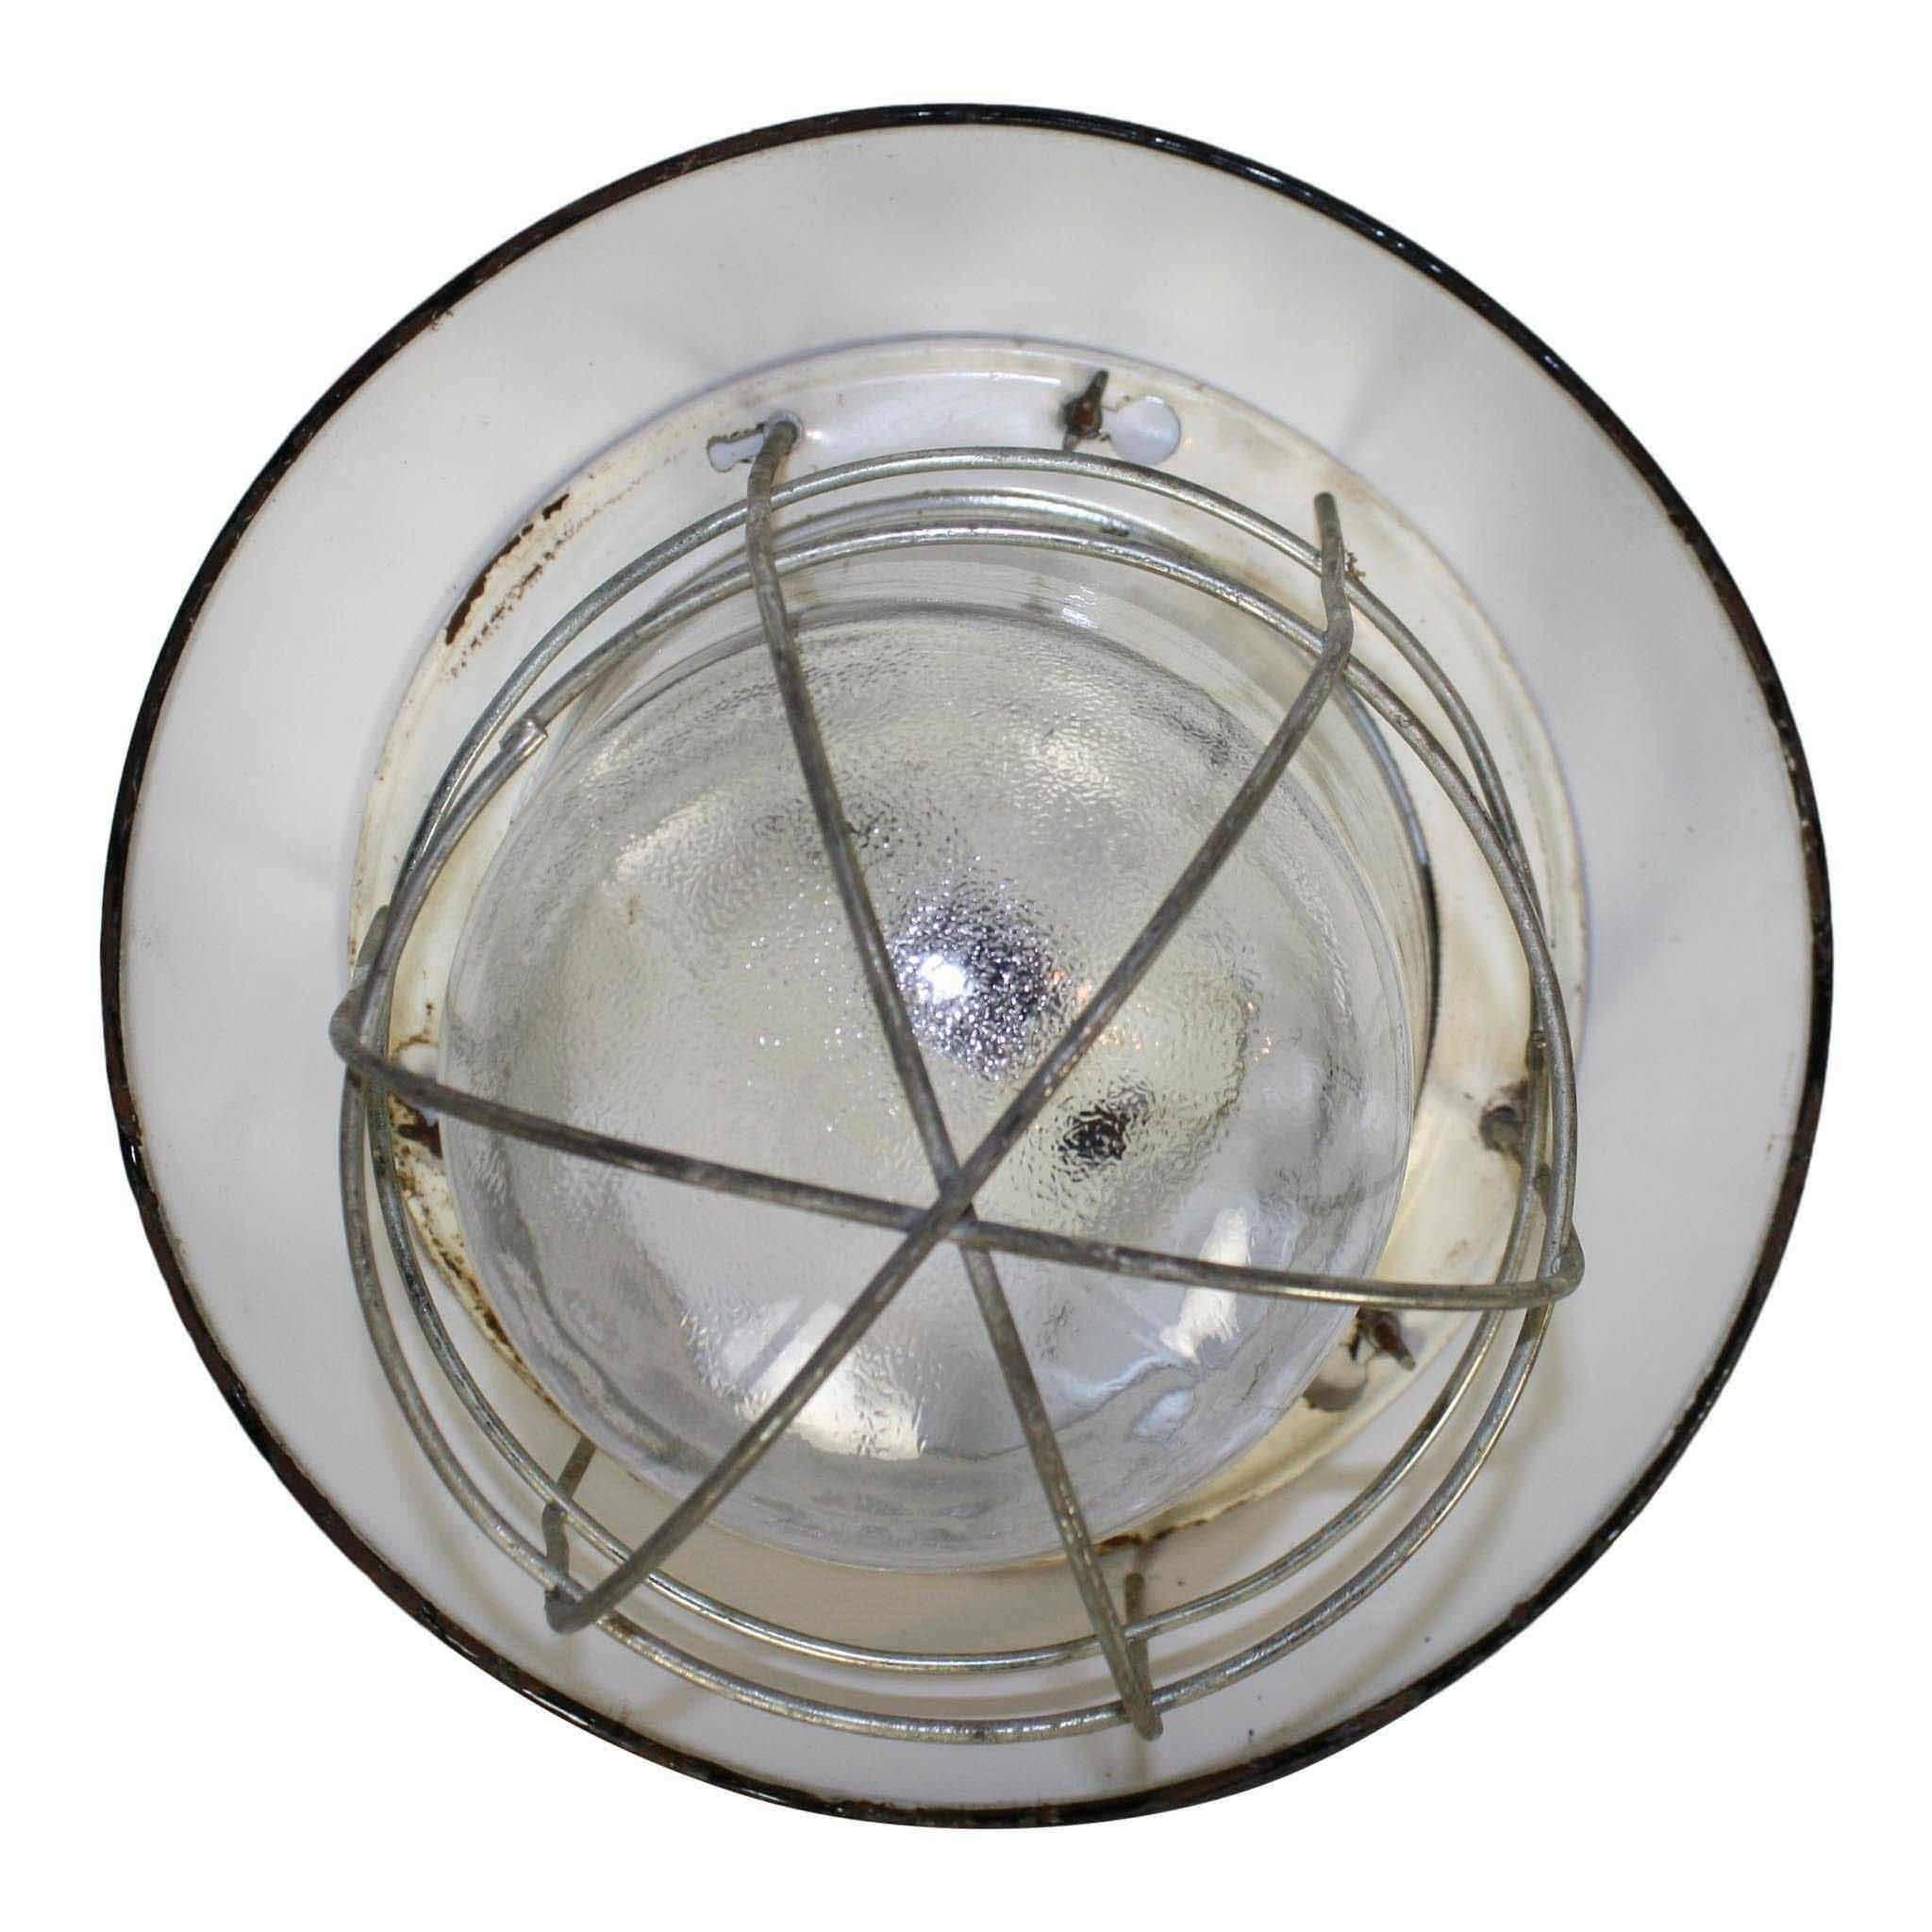 Ce plafonnier industriel possède un abat-jour noir et un globe en verre avec une cage. Il n'est pas câblé mais peut être facilement câblé pour être utilisé. 